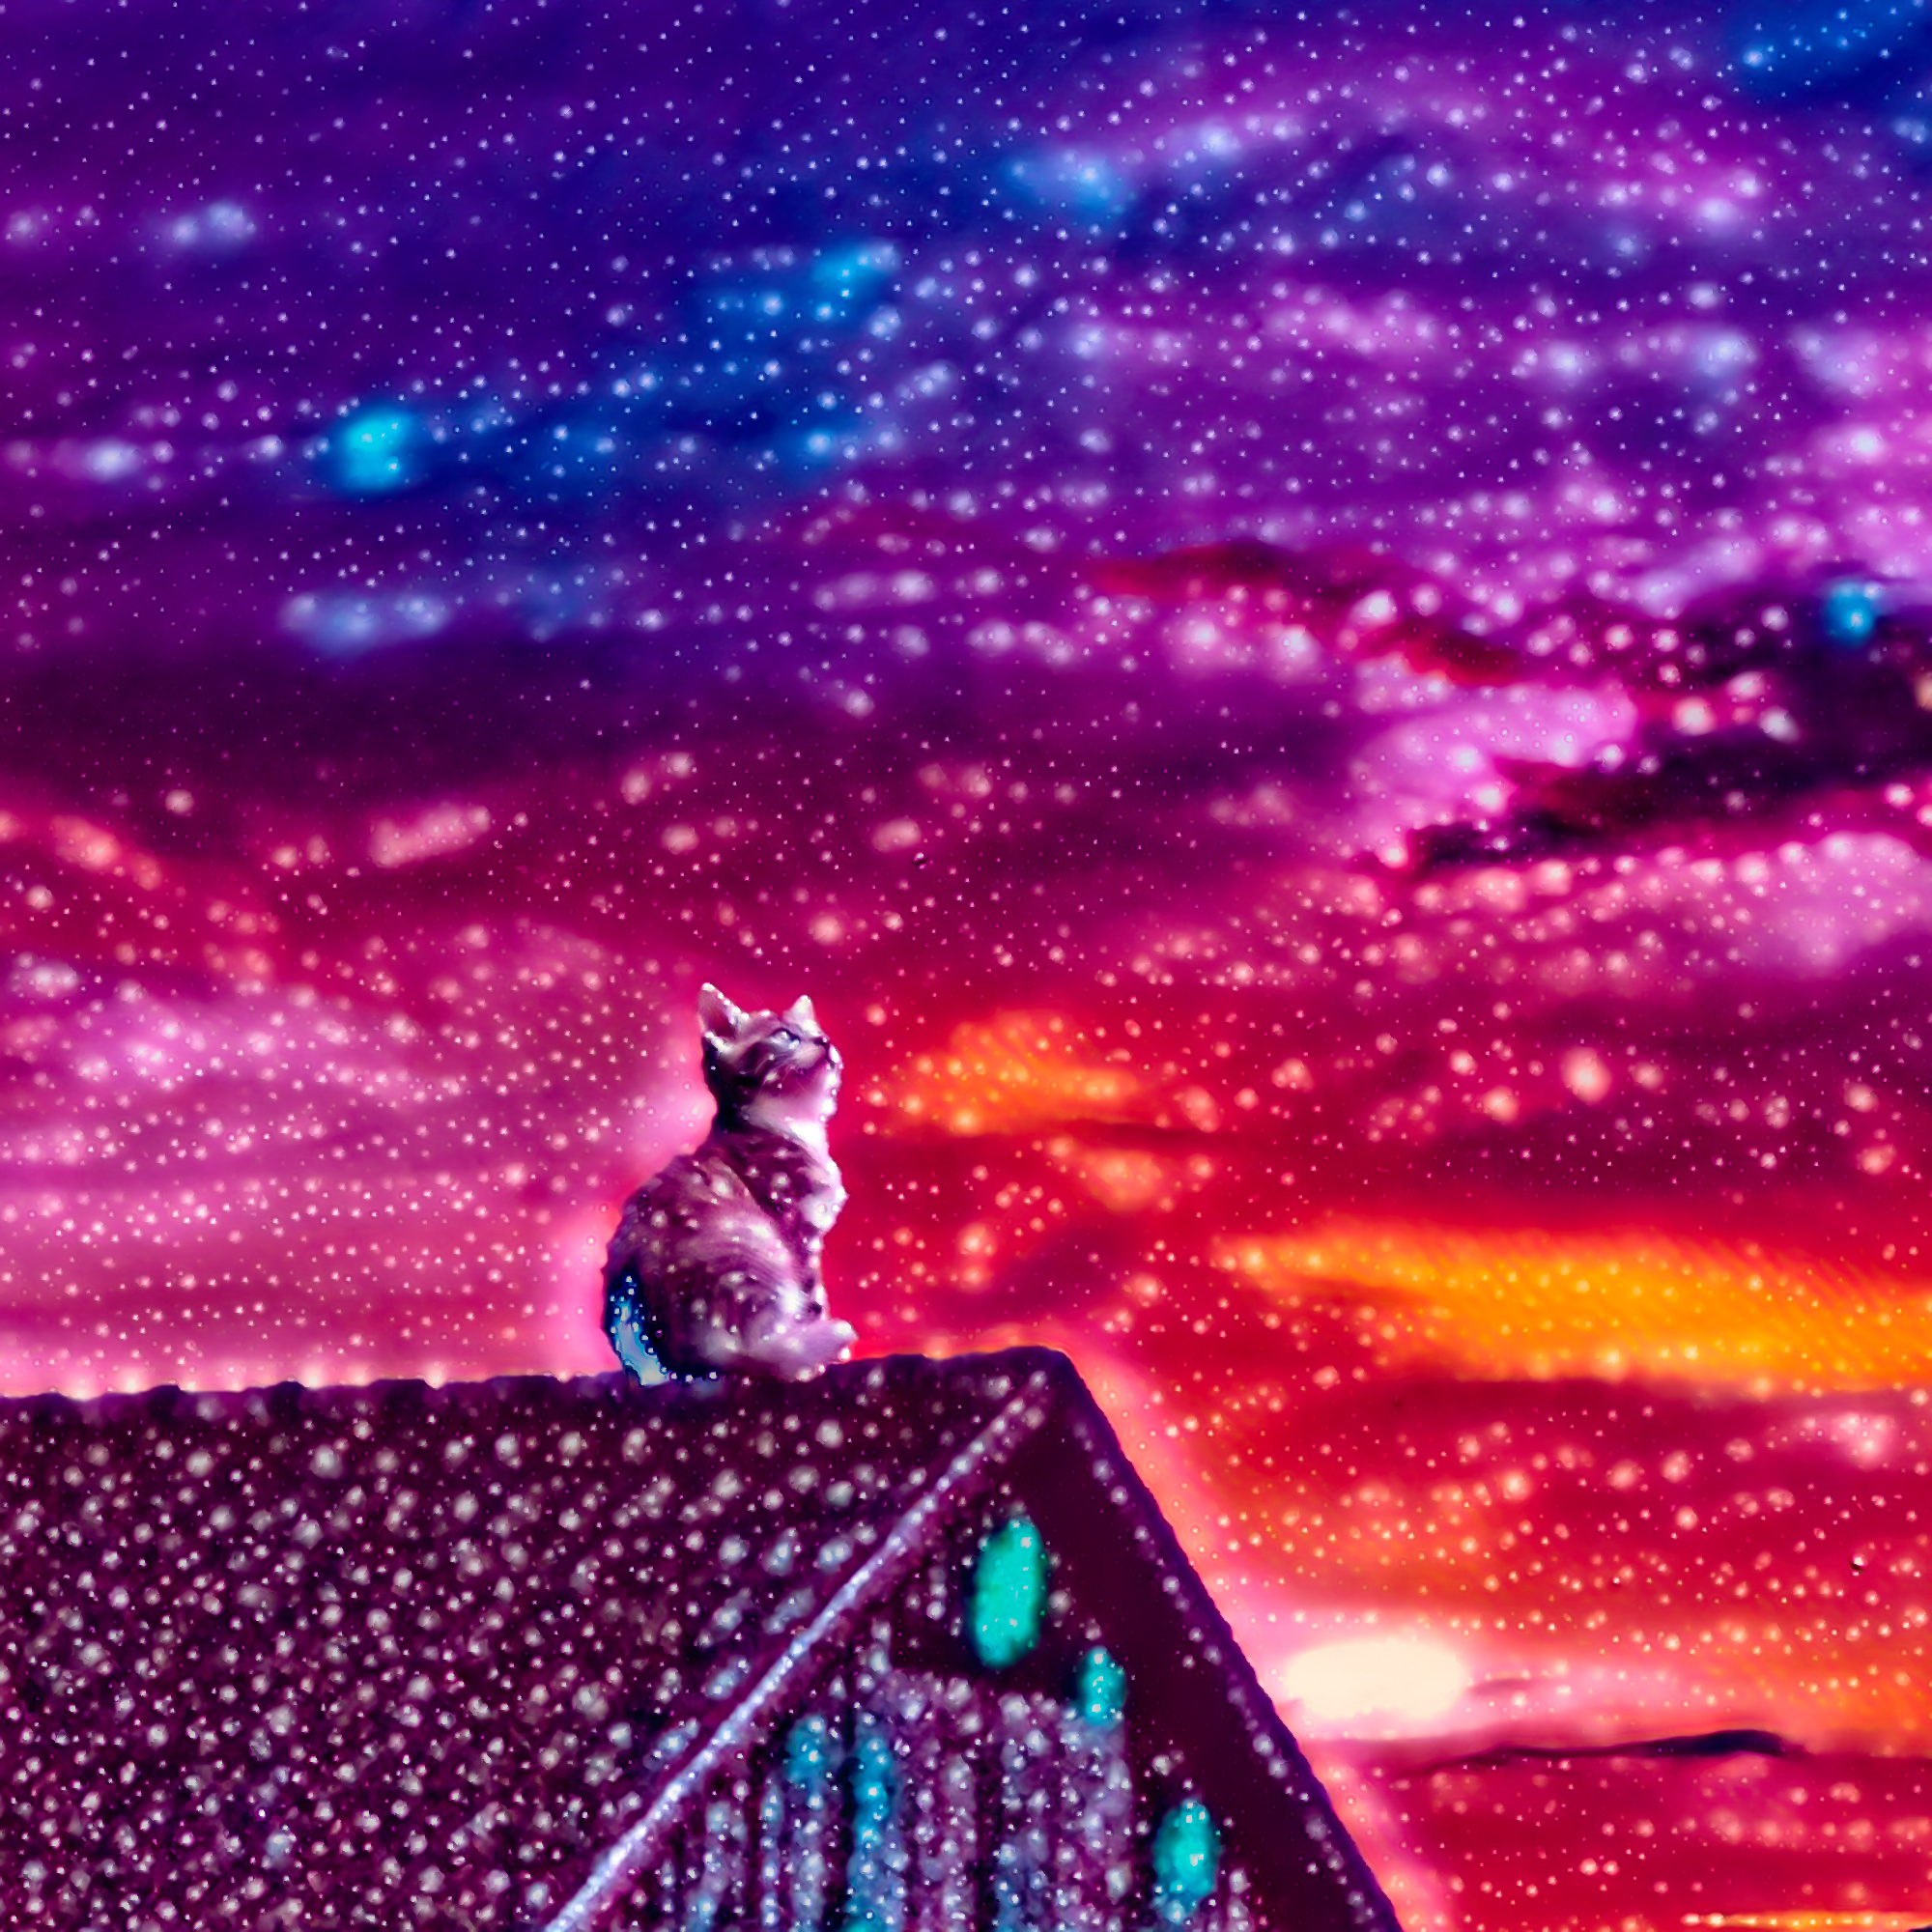 無料イラスト 背景画像素材 座る猫 美しく幻想的な星空と夕日 Free Illustlation くりえいてぃぶ